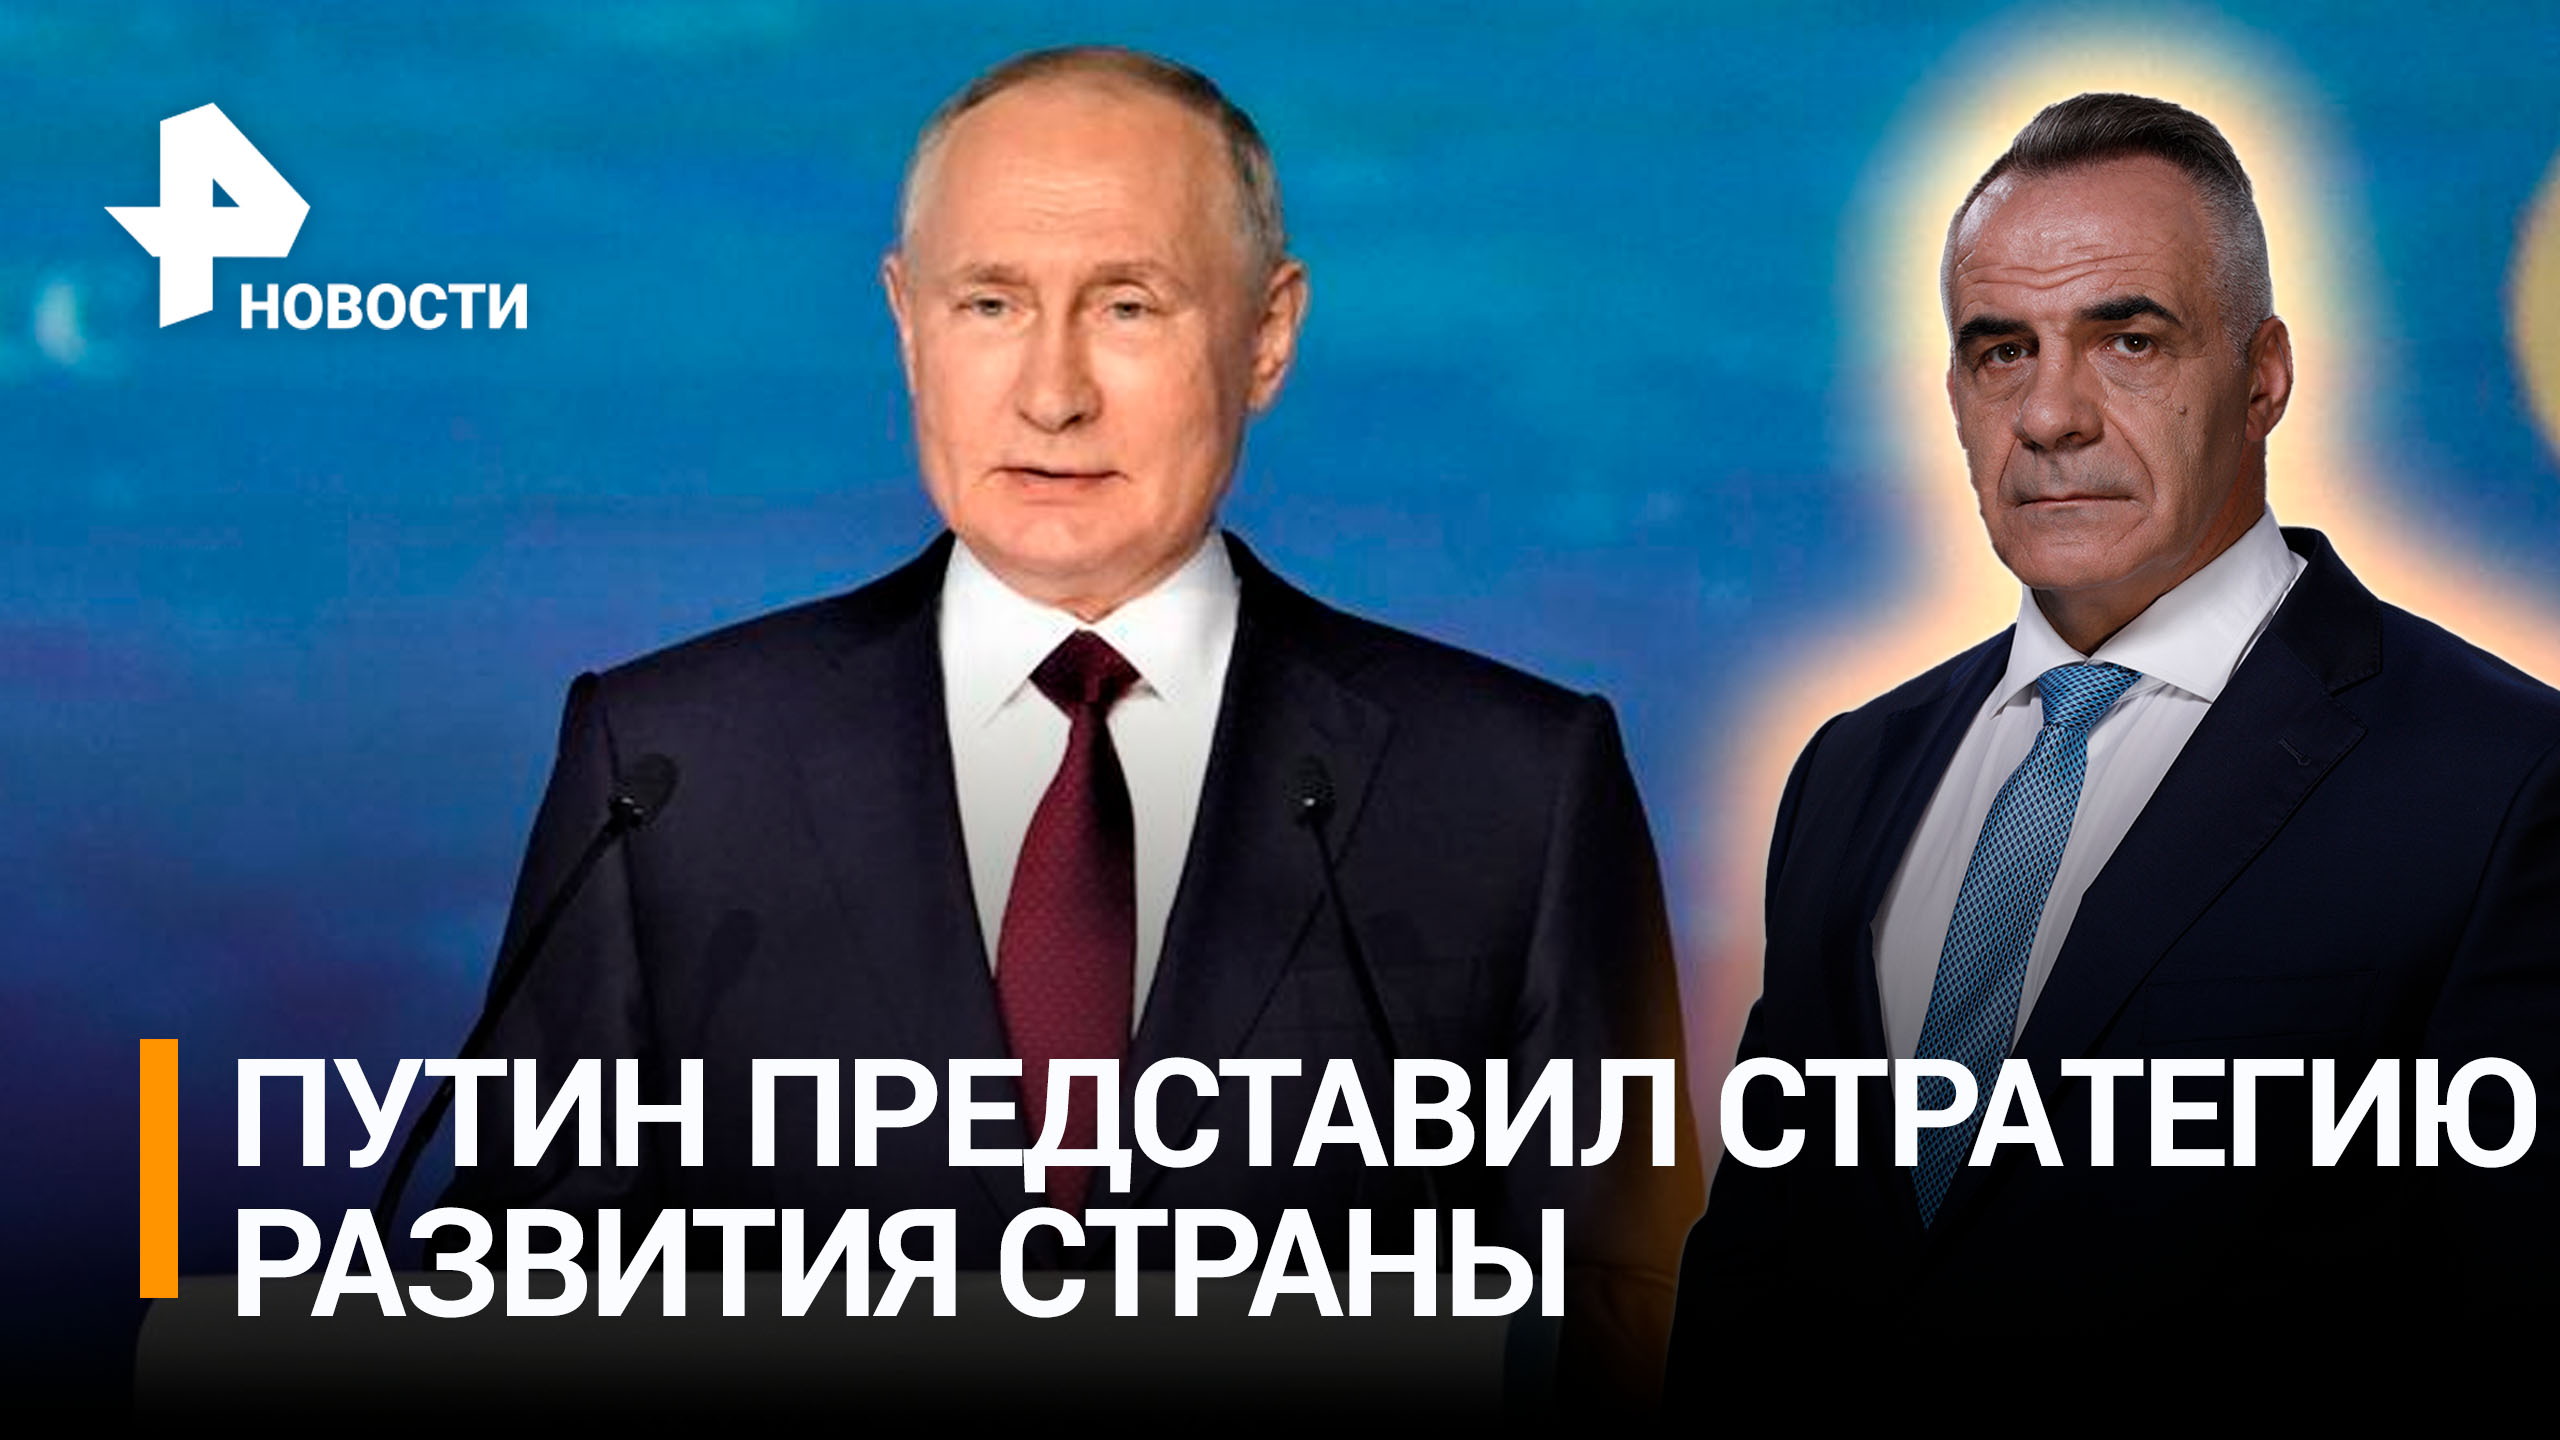 "Будем укреплять наш суверенитет": Путин дал сигнал Западу на ПМЭФ / ИТОГИ с Петром Марченко